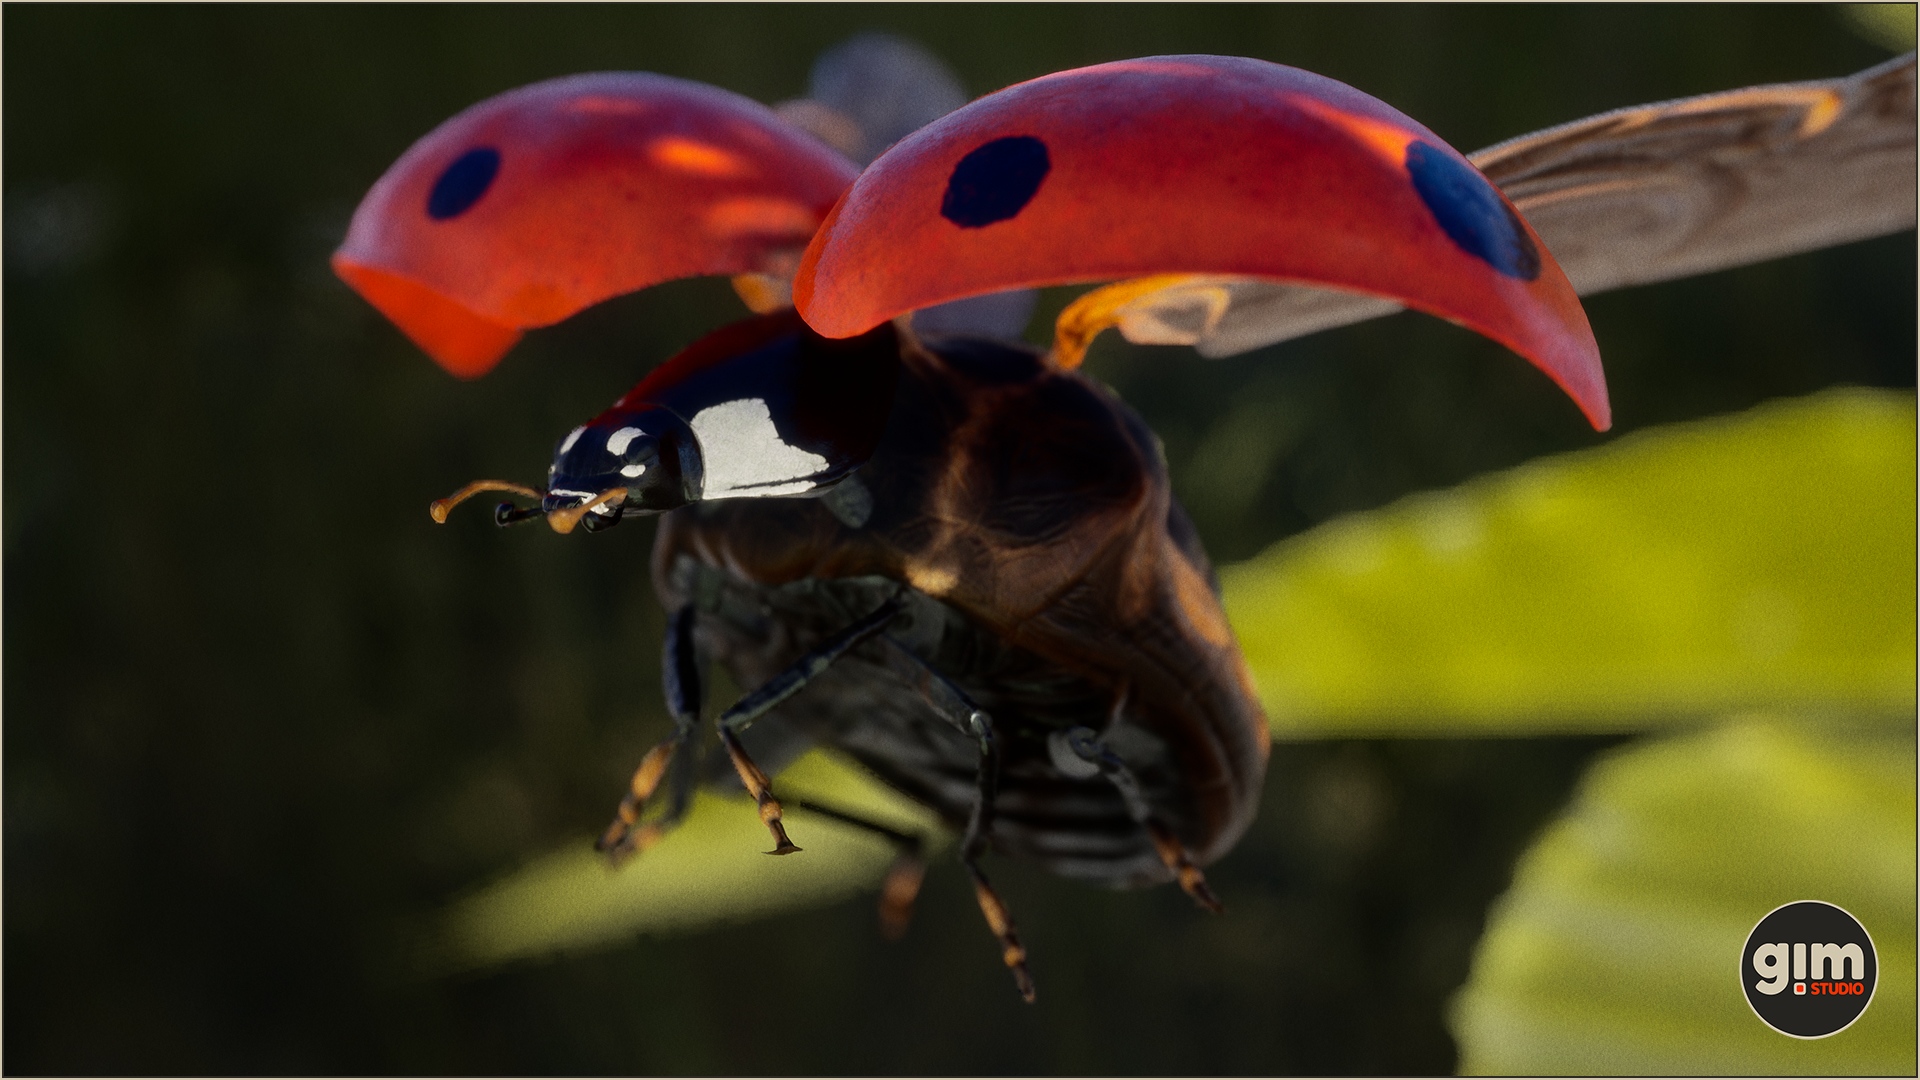 Ladybug midflight